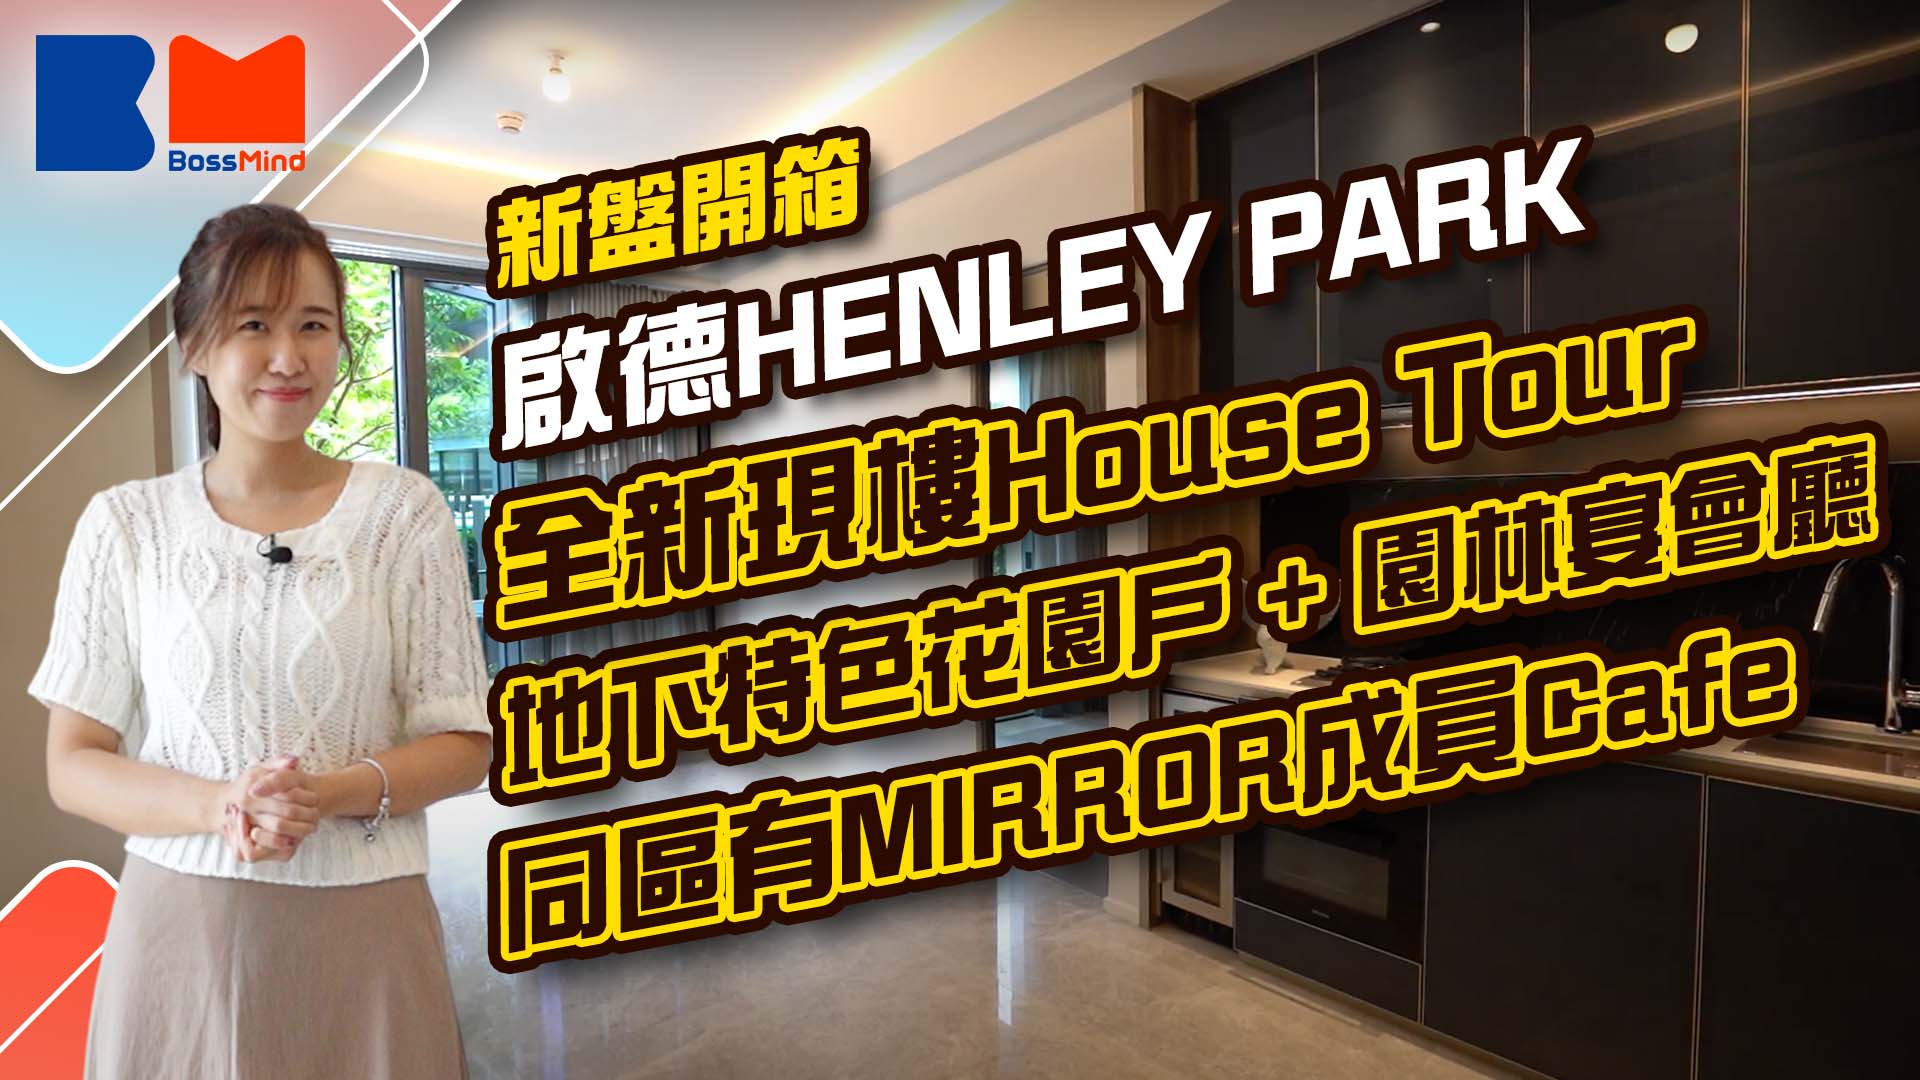 新盤開箱丨啟德HENLEY PARK全新現樓House Tour 3個現樓由1房至3房地下特色花園戶 直擊會所兩大特色 